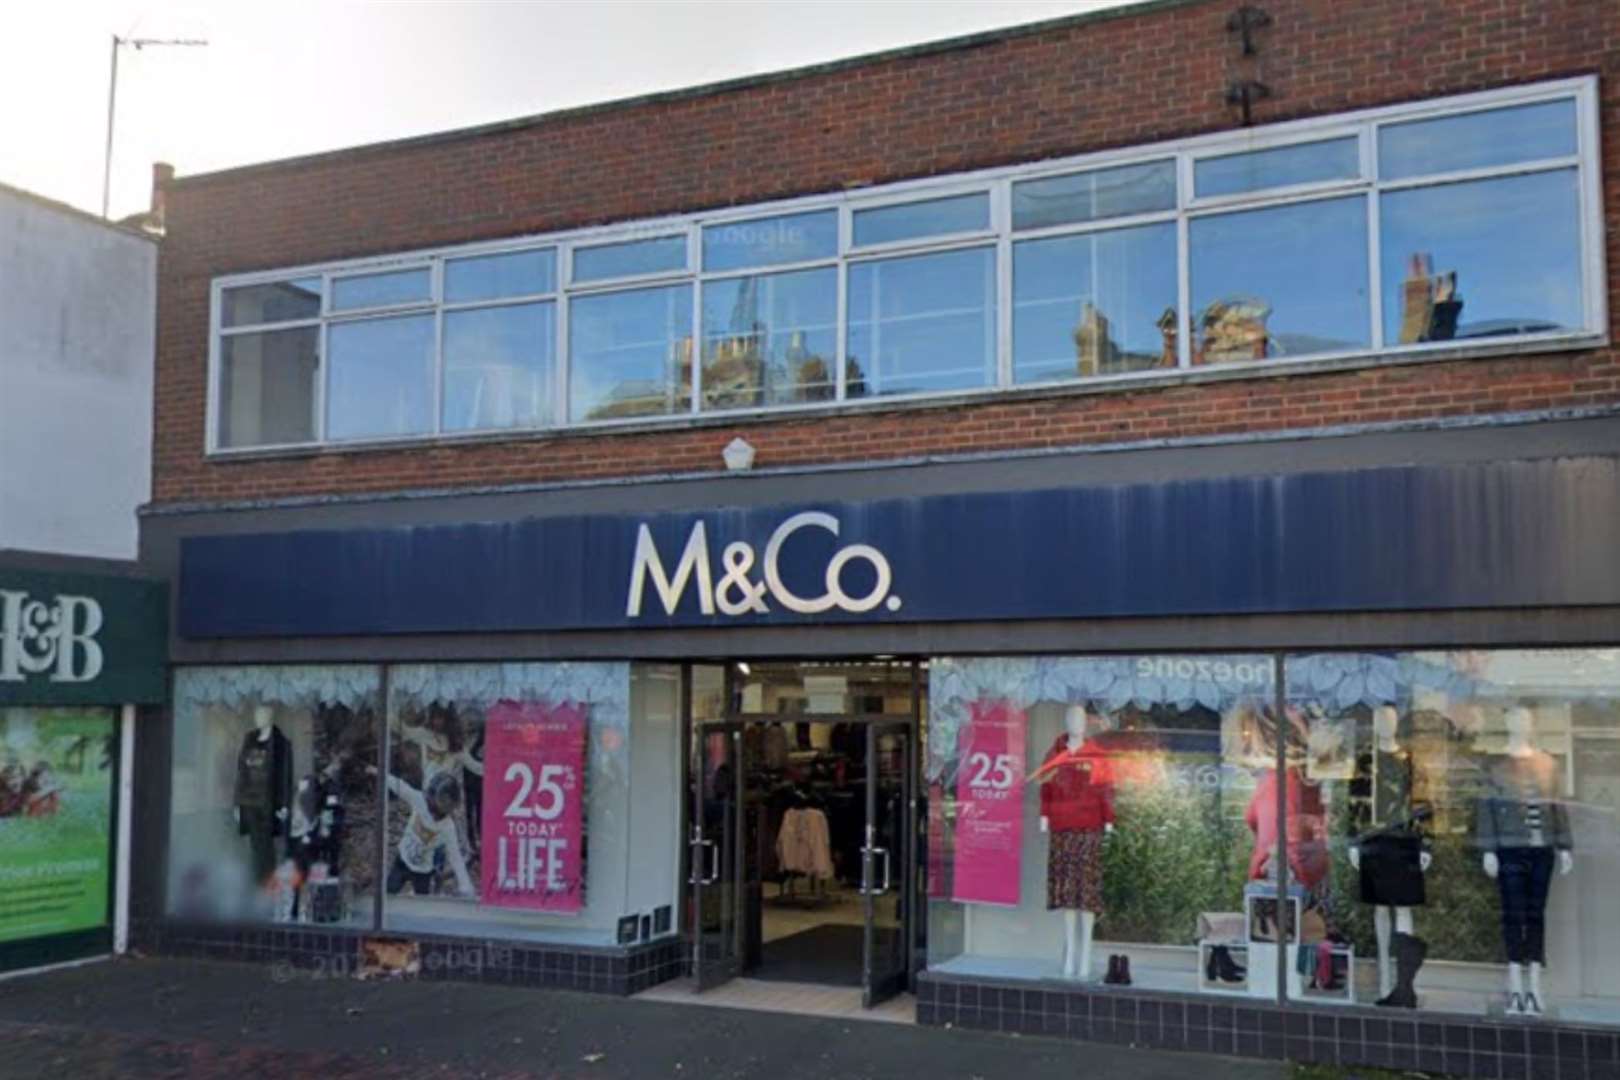 M&Co in Sittingbourne. Picture: Google Maps